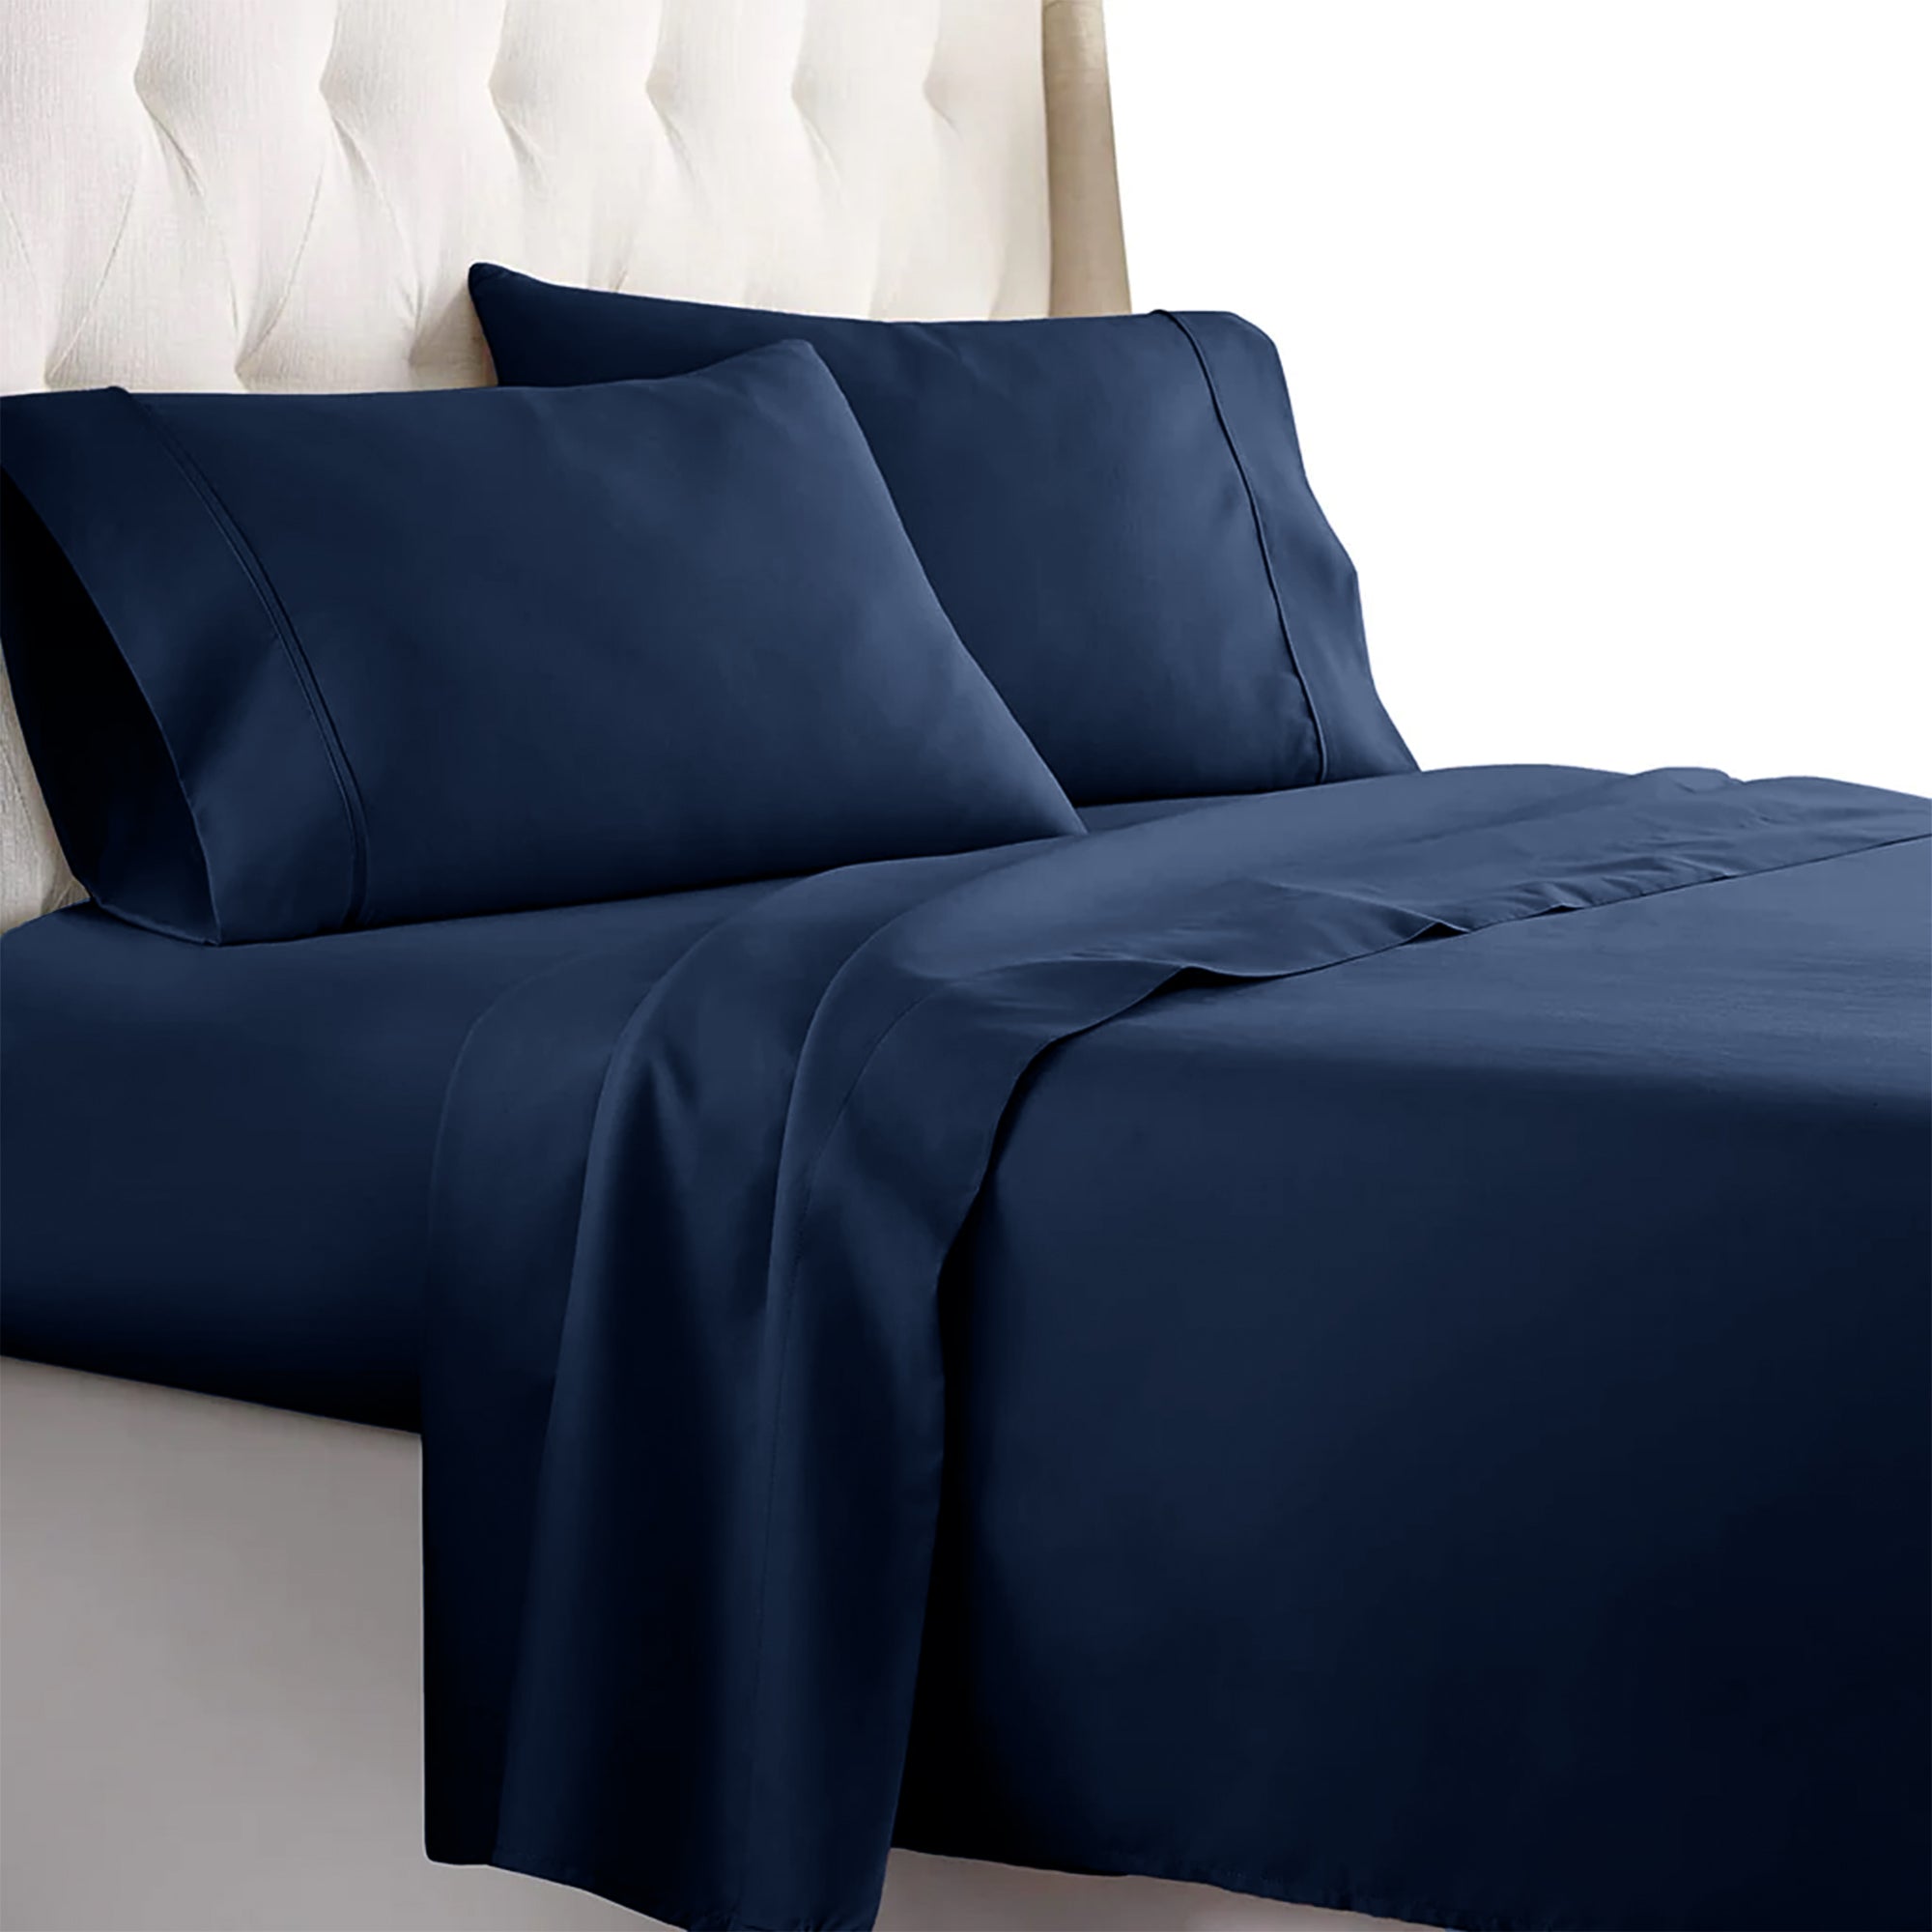 Luxury Bedsheets